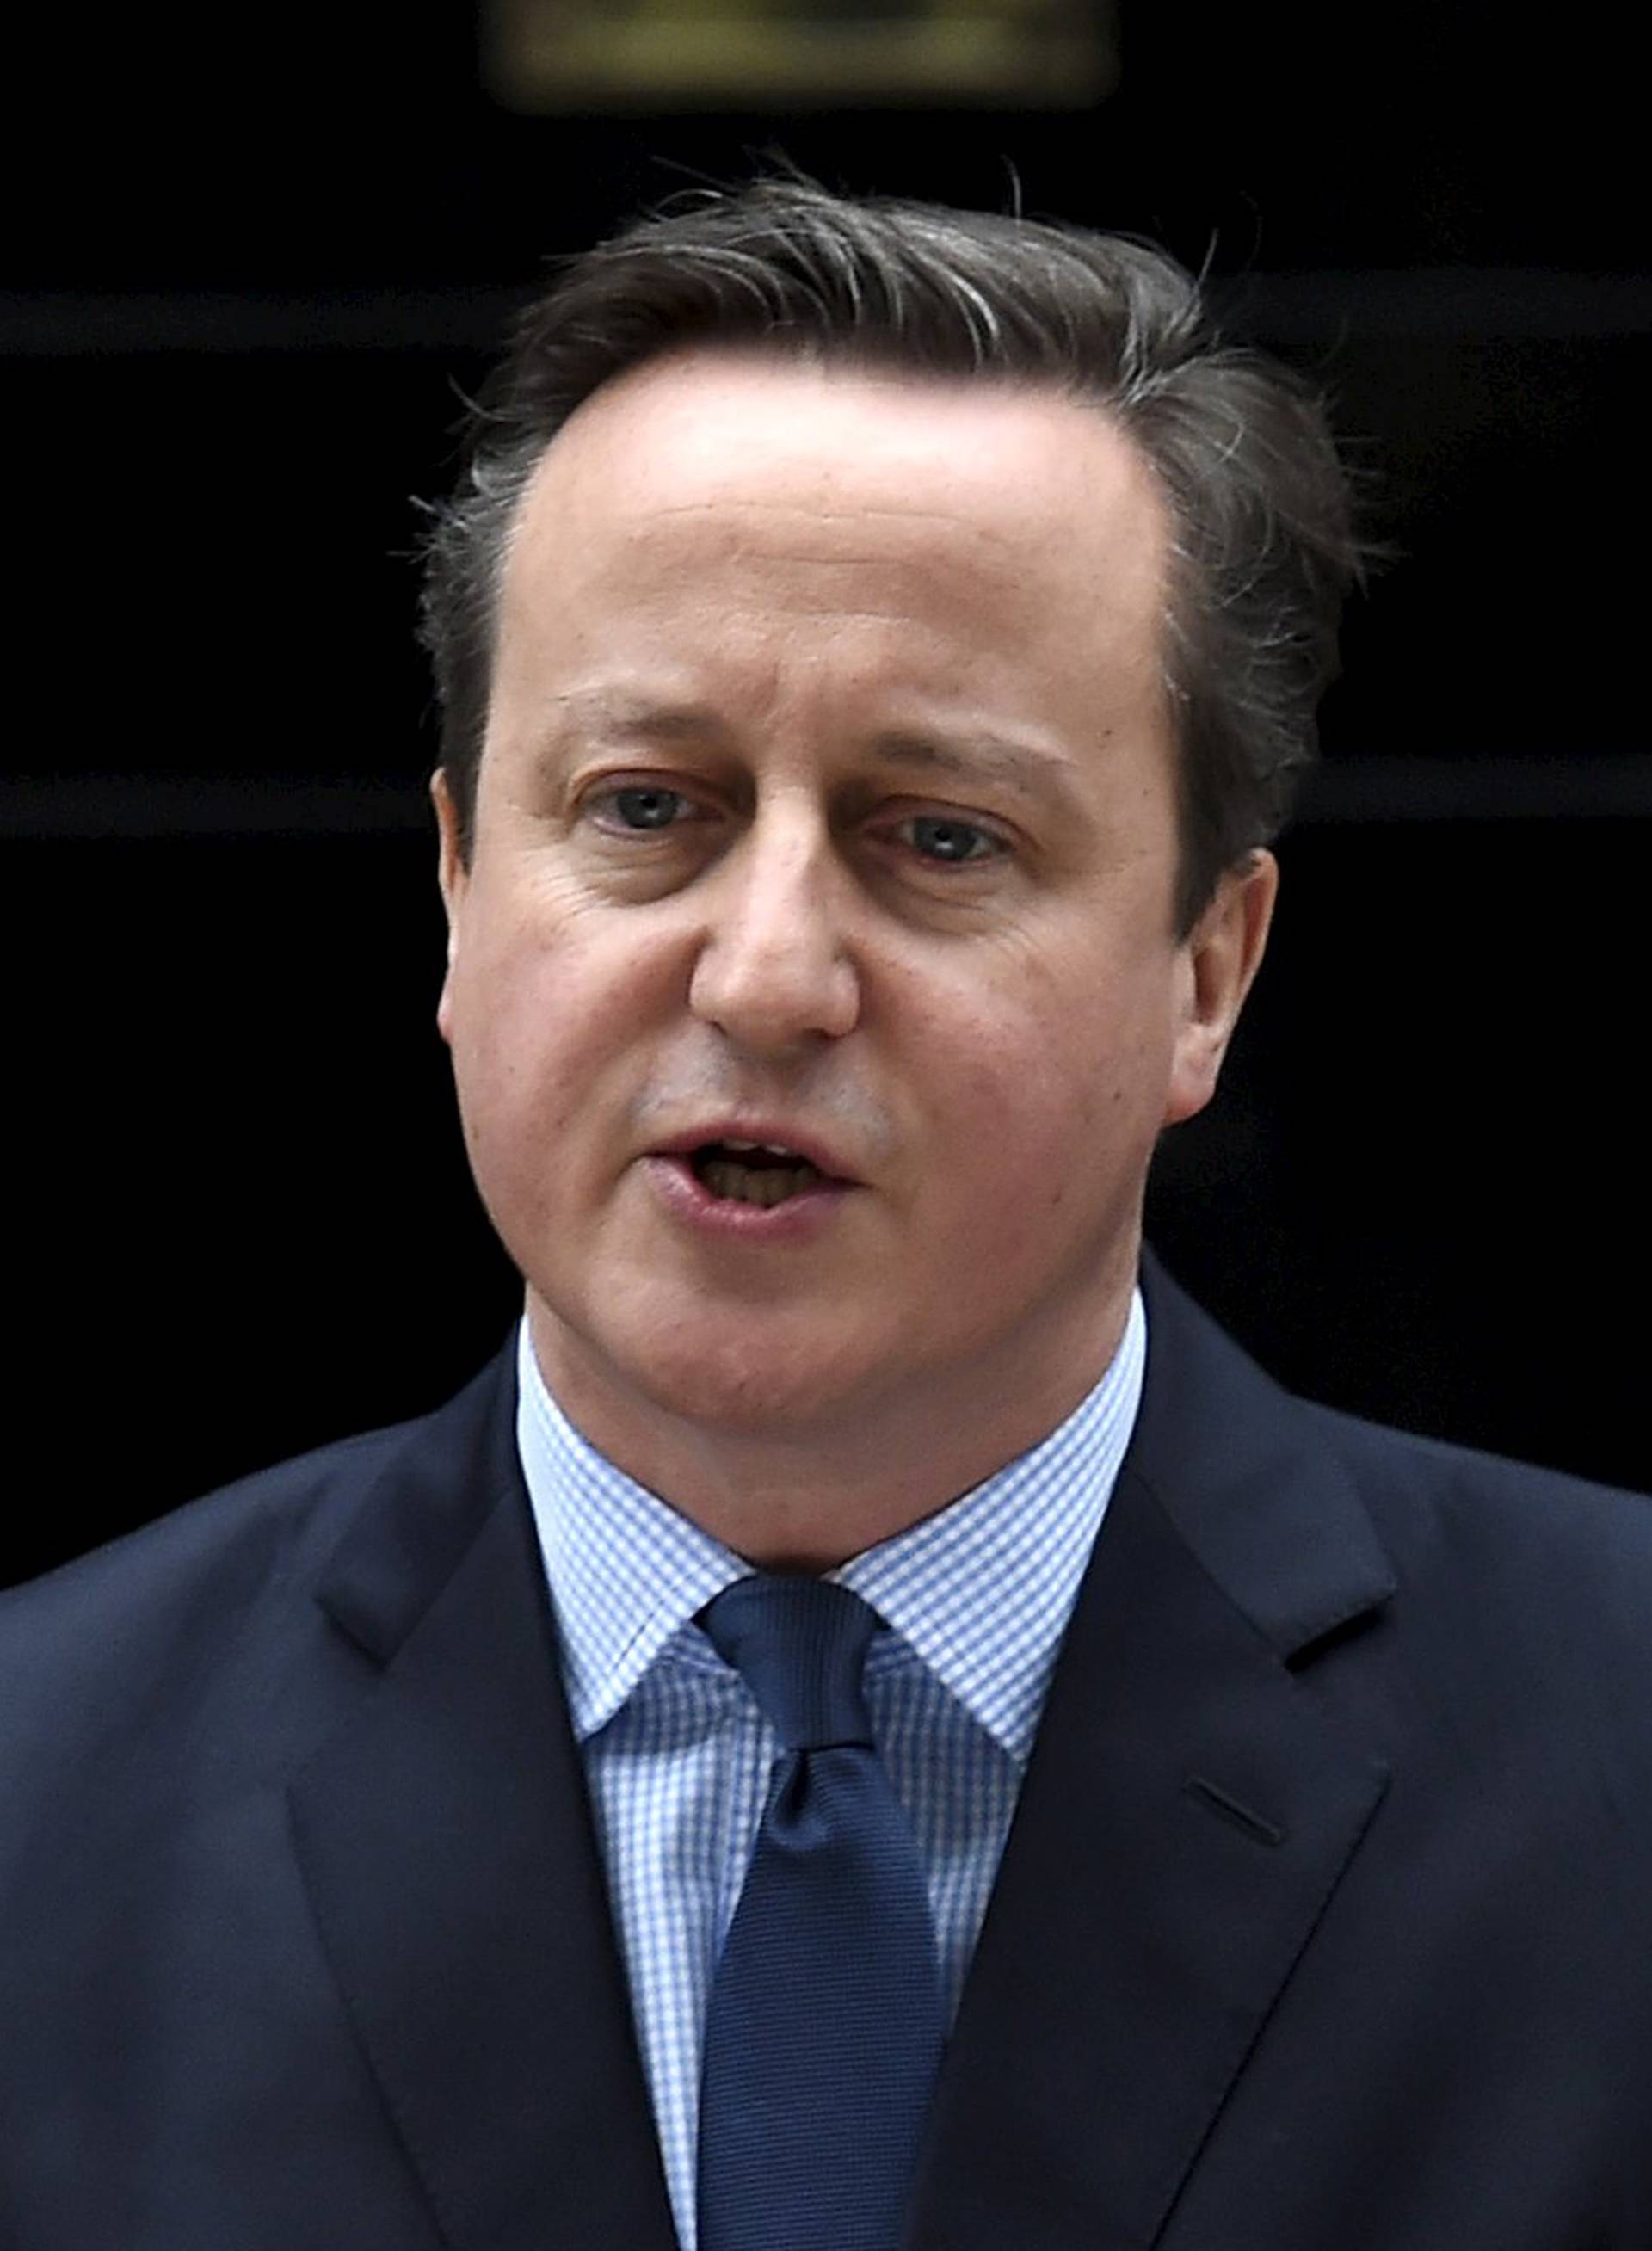 David Cameron: Ja sam kriv, naučio sam lekciju iz ovoga